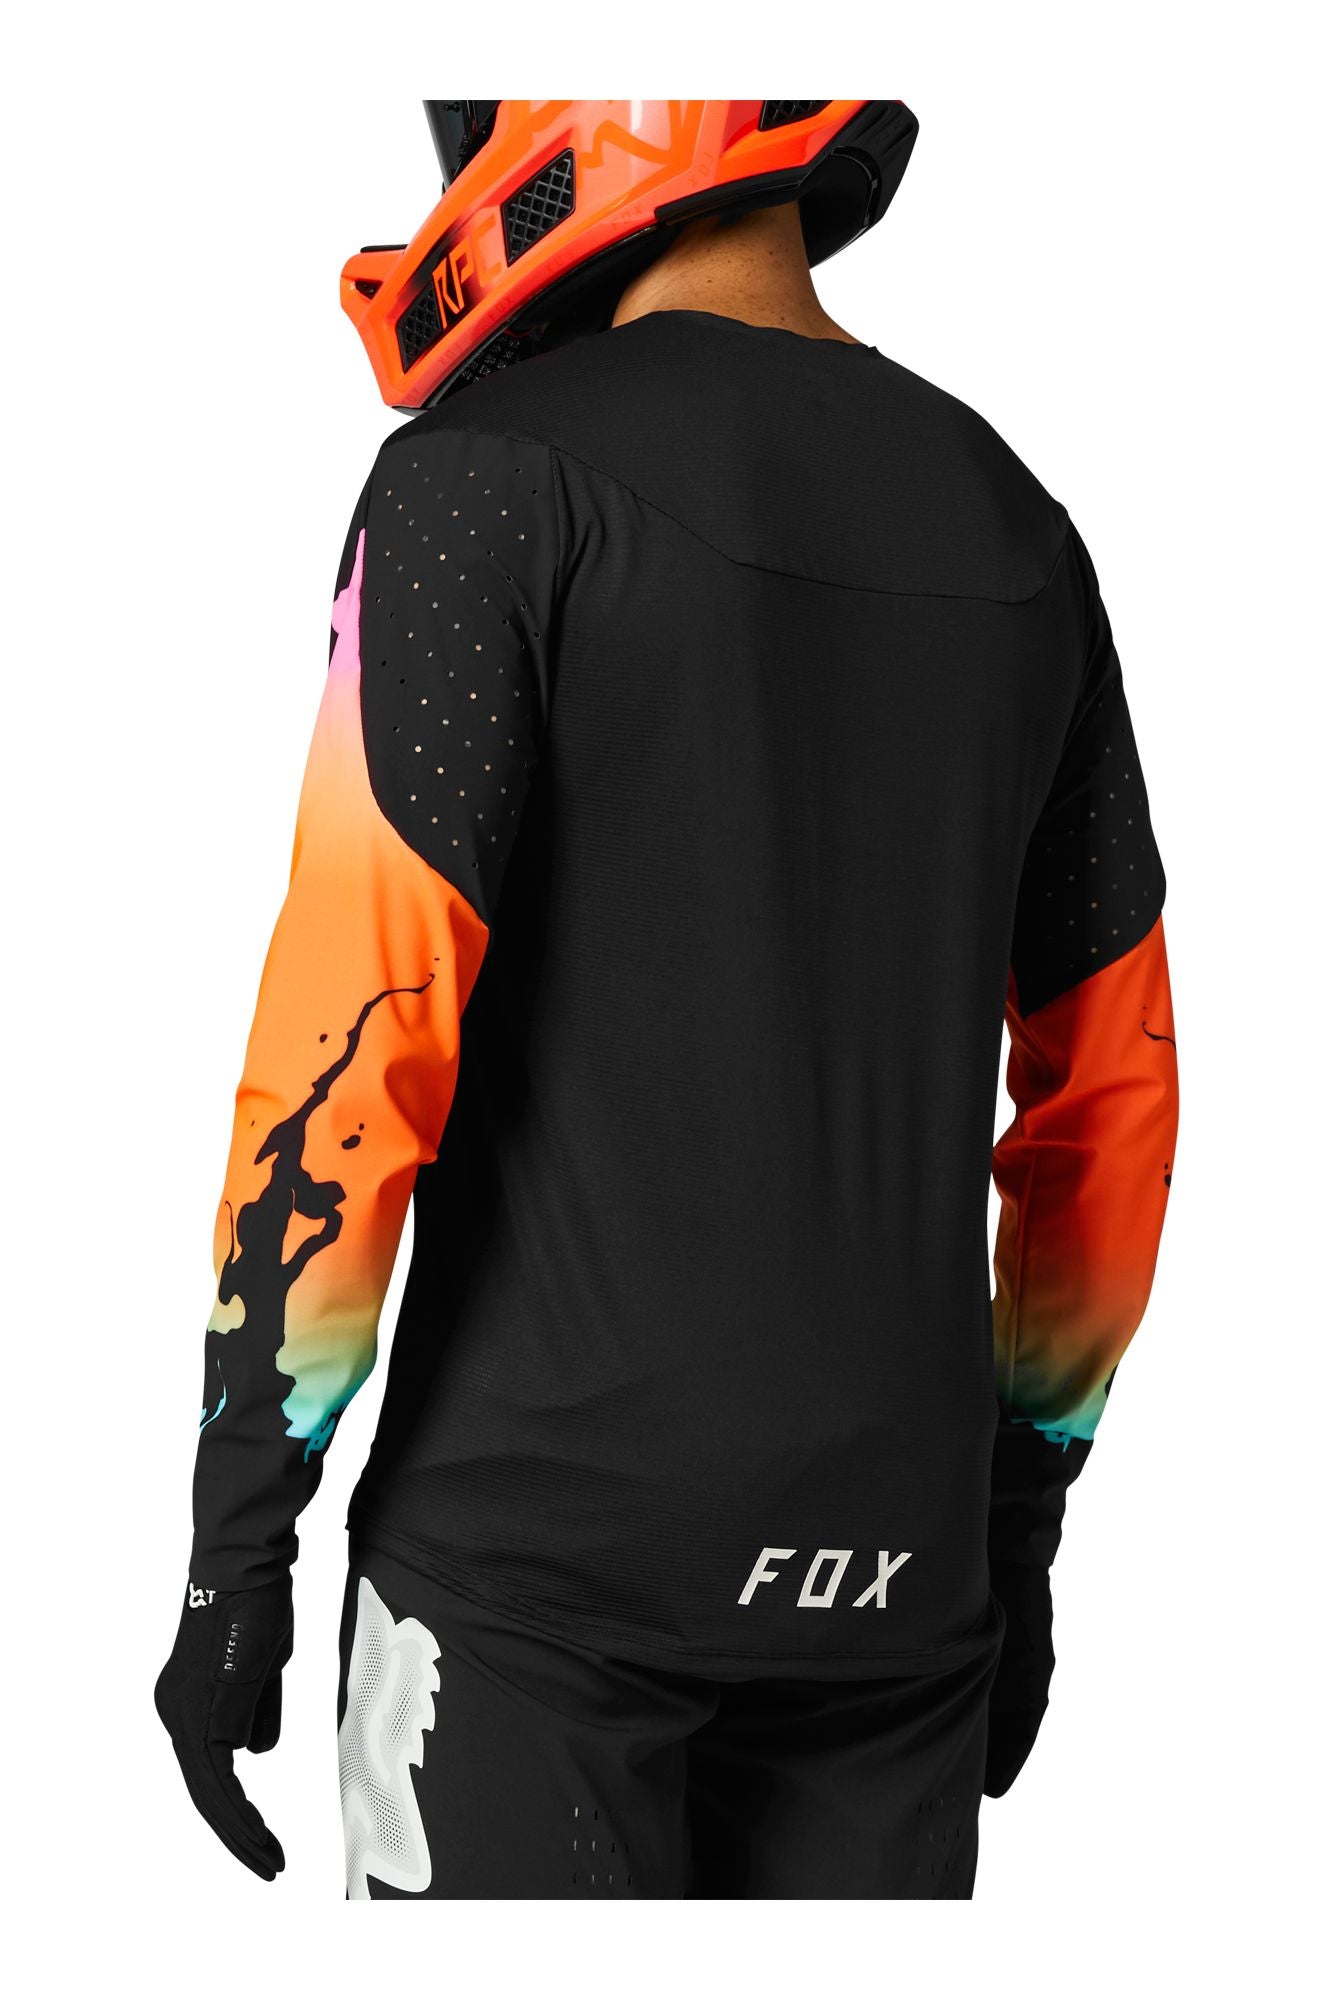 Jersey Fox Flexair Pyre RS